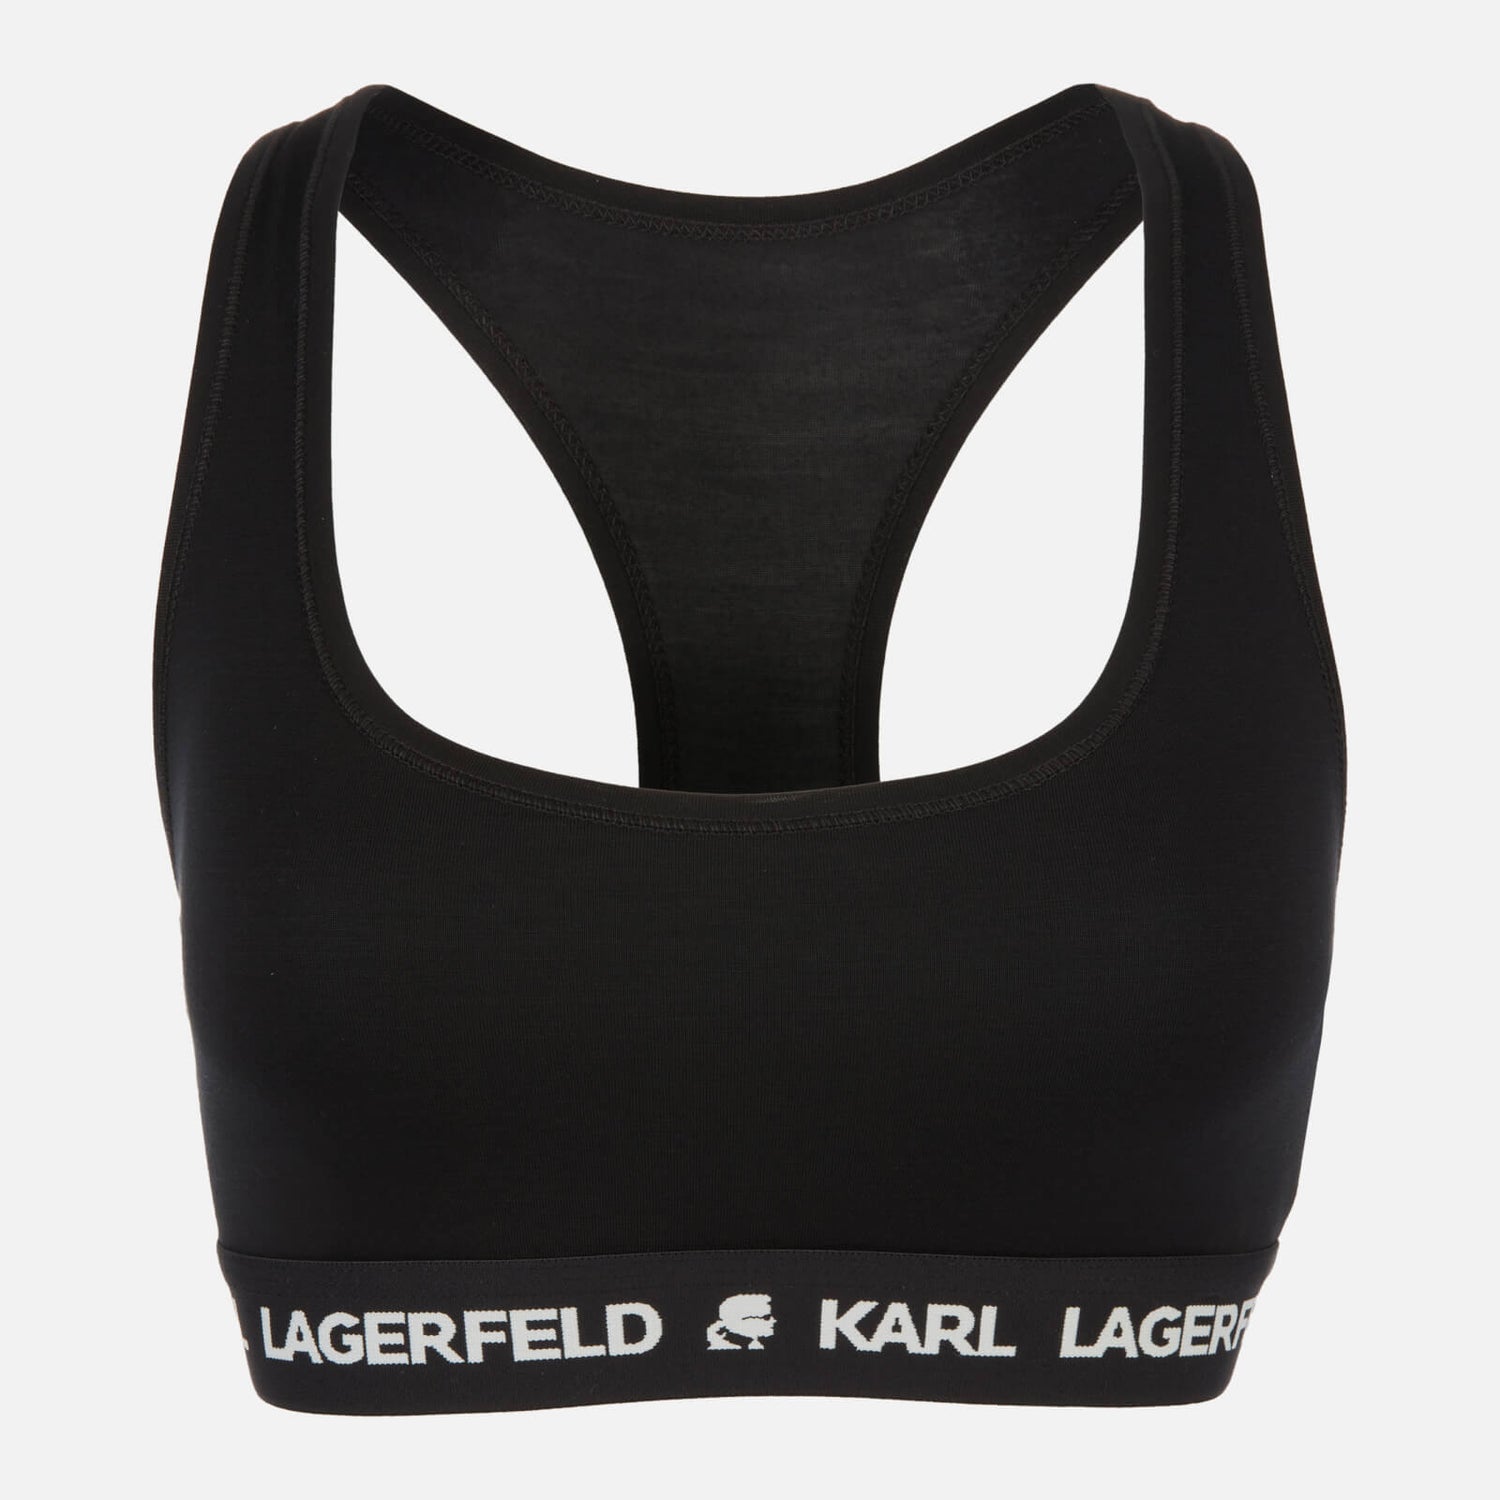 KARL LAGERFELD Women's Logo Bralette - Black